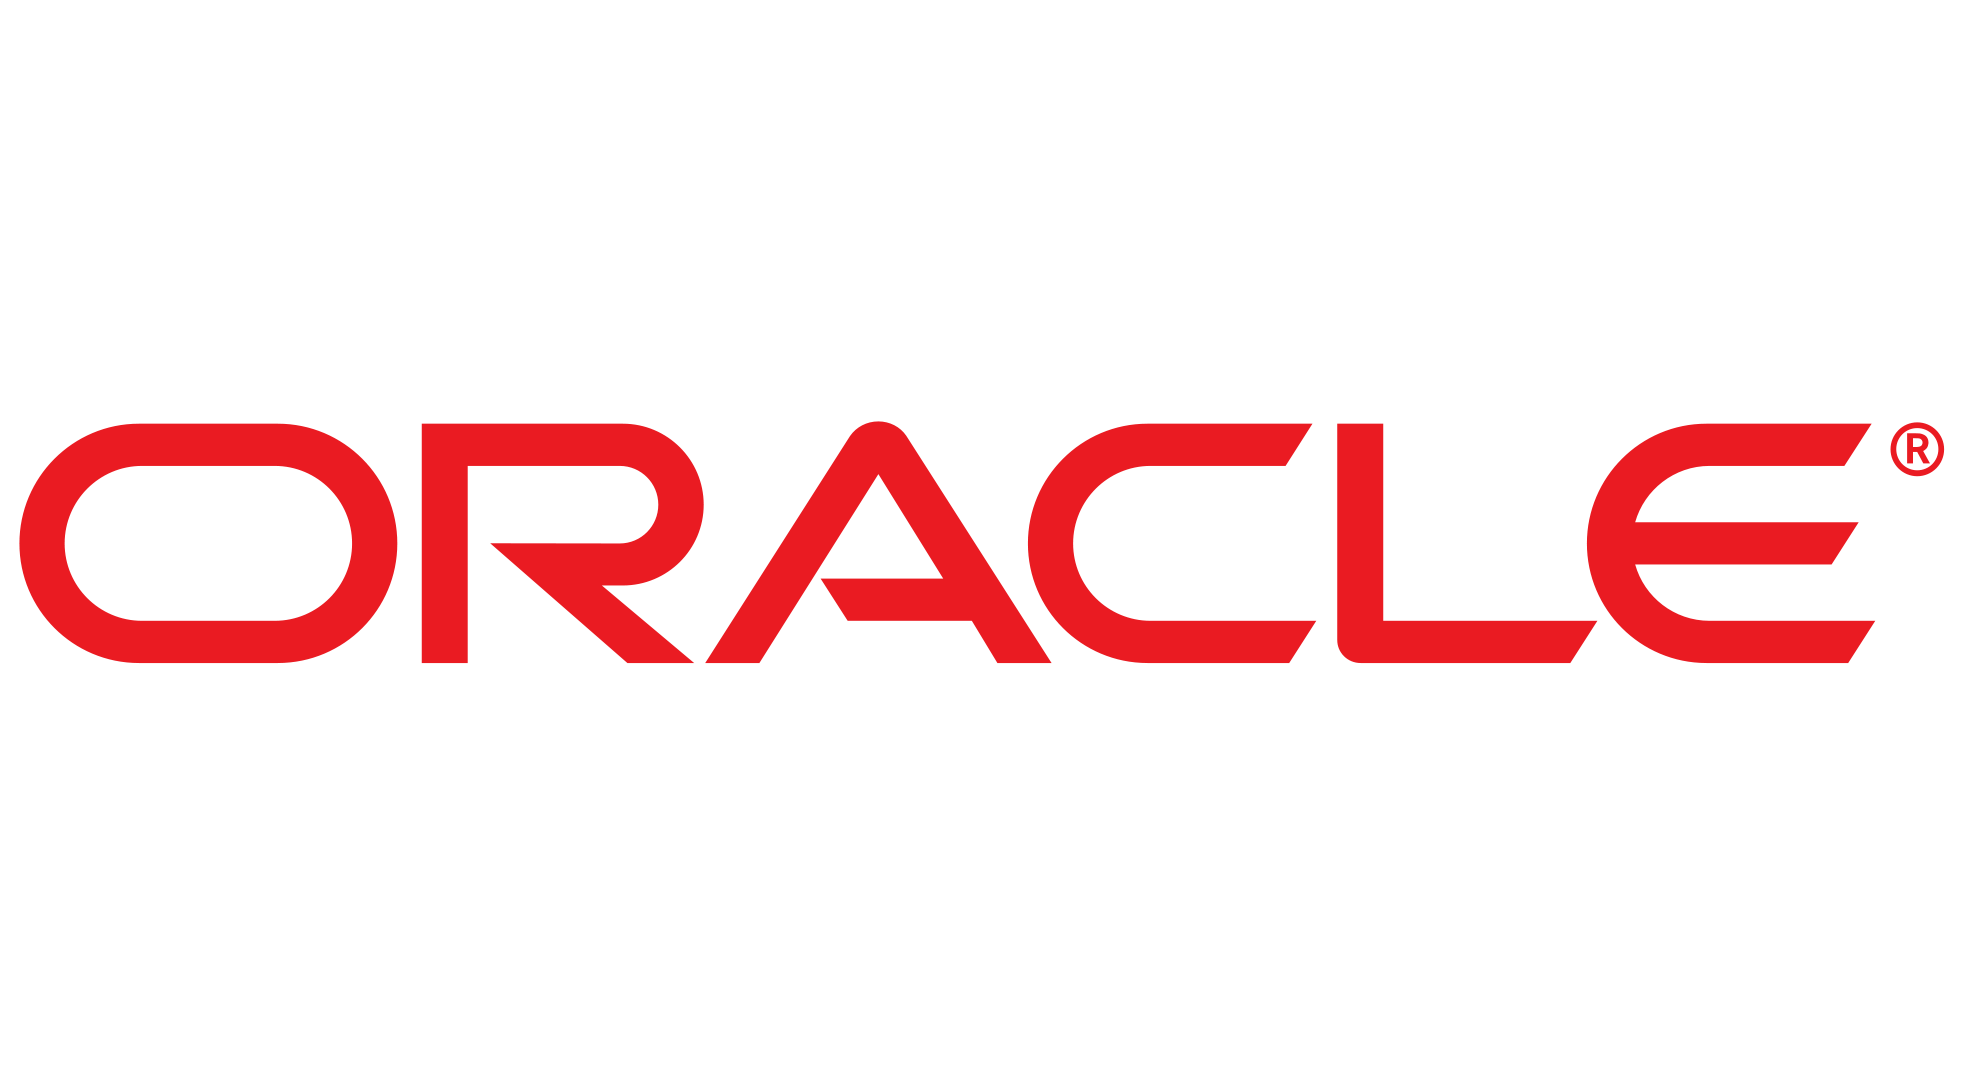 Orocle Logo - oracle-logo